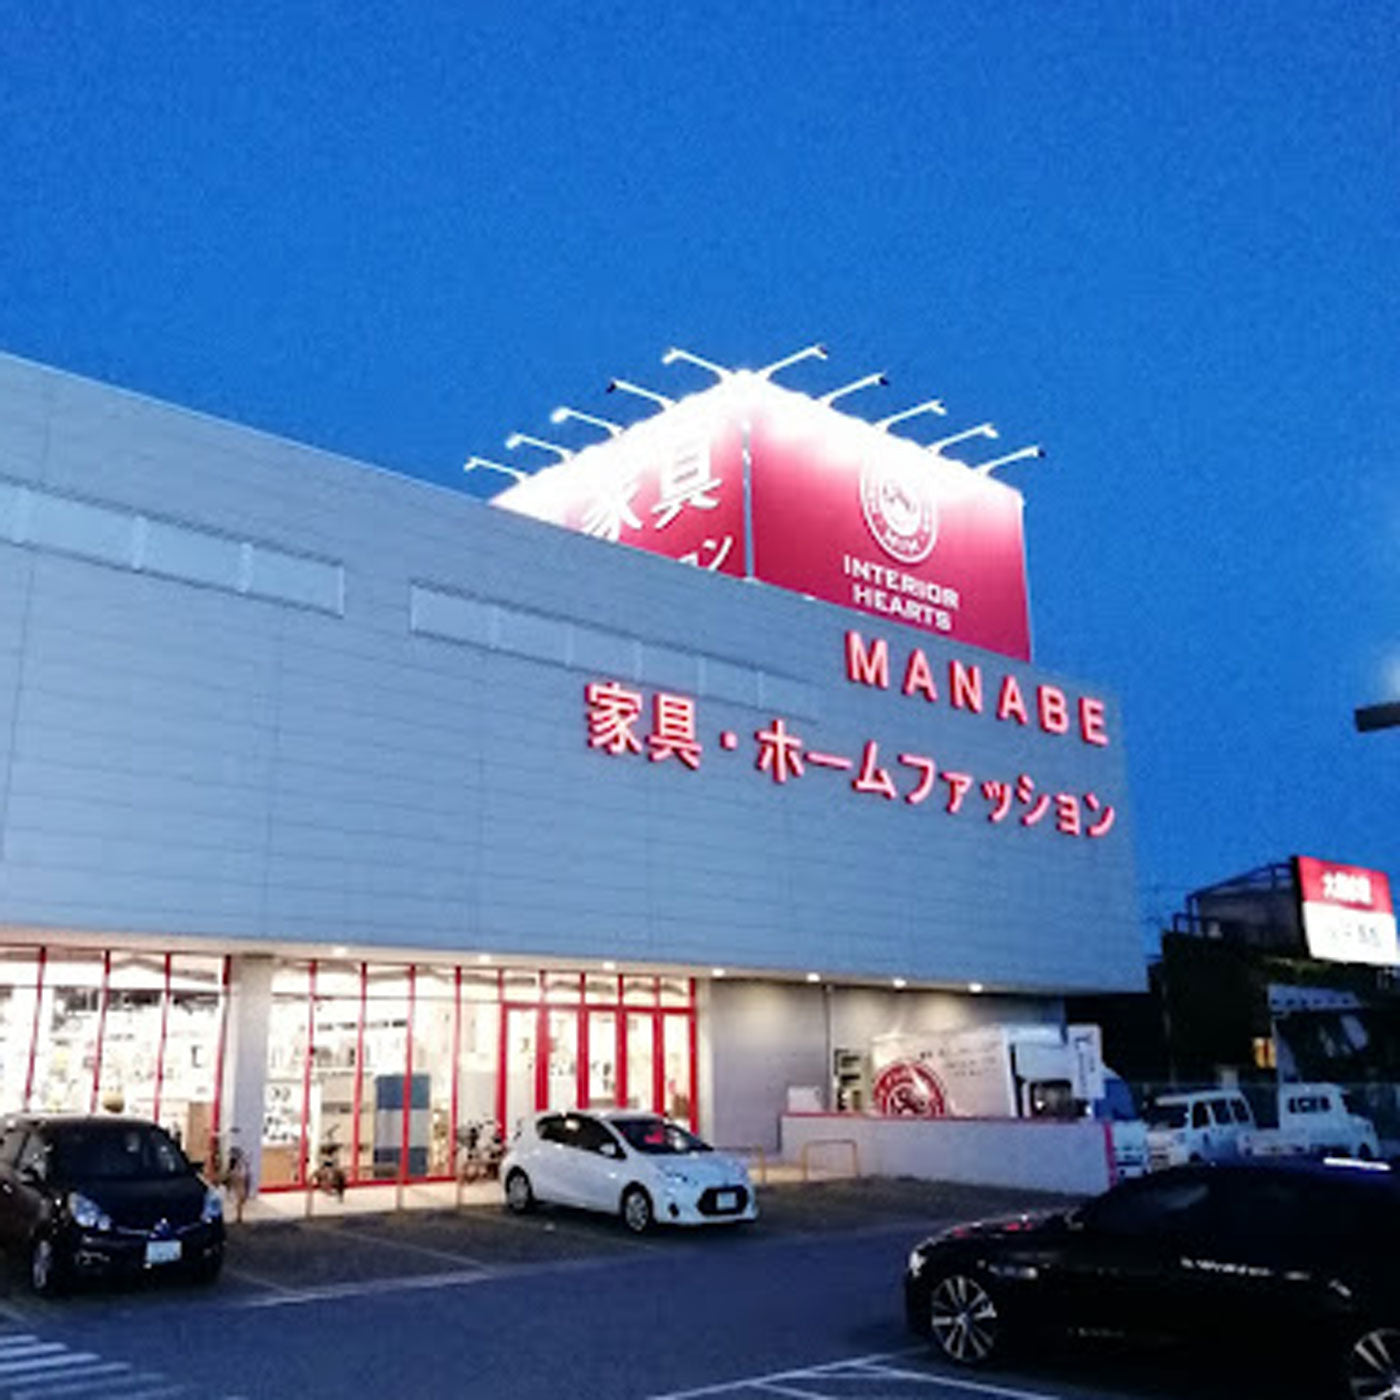 兵庫県-マナベインテリアハーツ川西店-クーロンランドセル